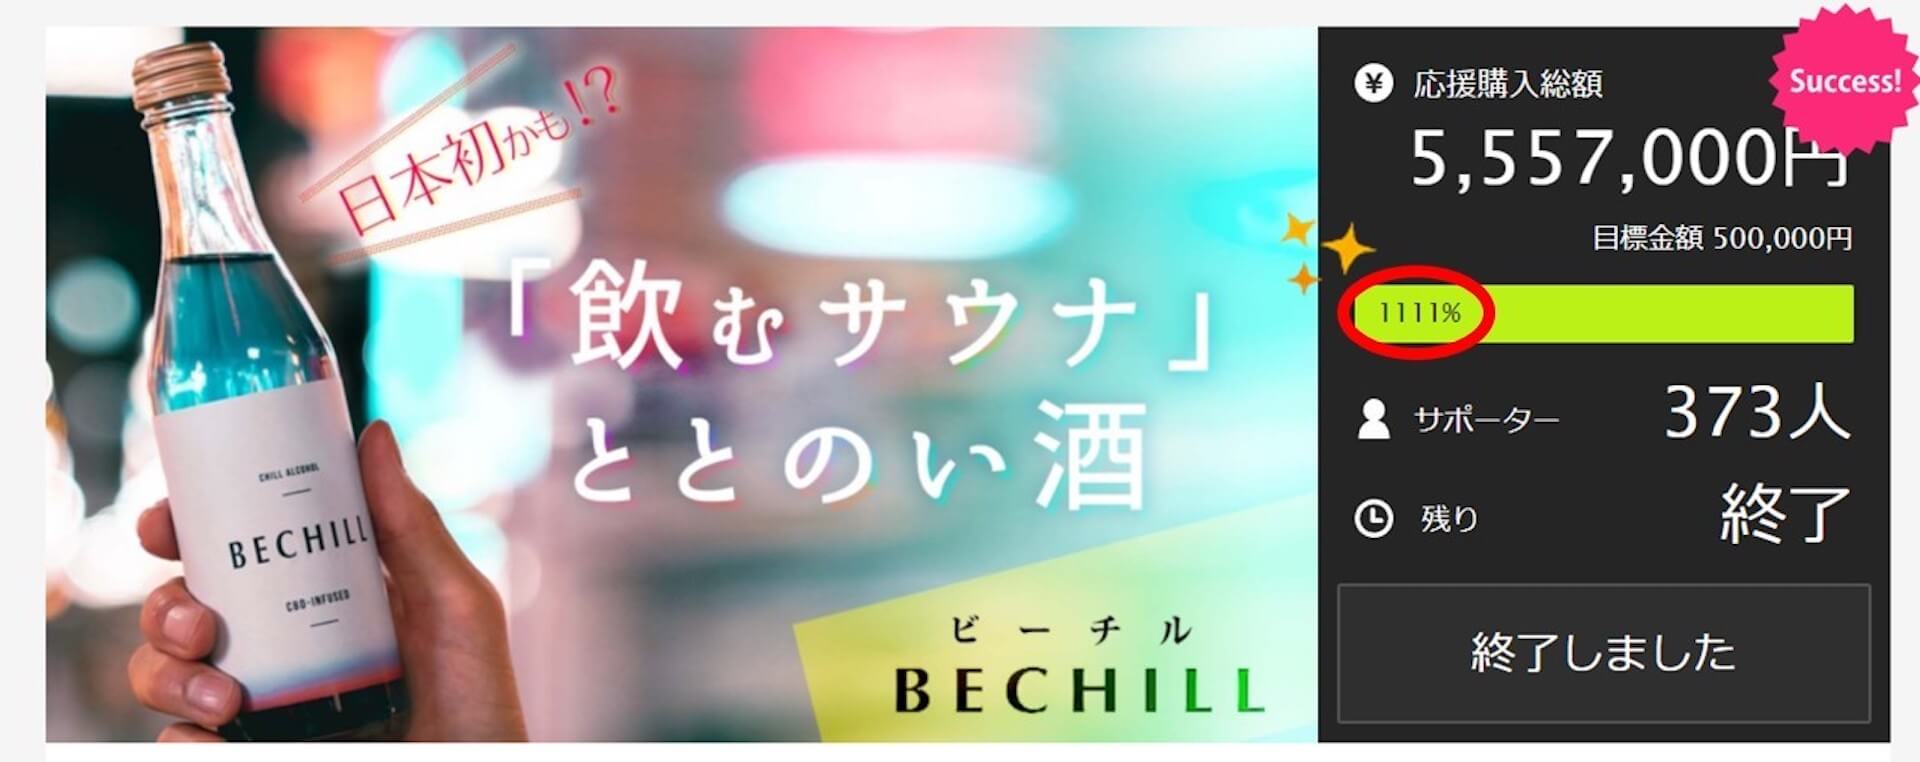 日本初CBDアルコール飲料「BECHILL」が販売開始！クラウドファンディングでCBD商品史上最高金額を達成 gourumet_220201_bechill_1